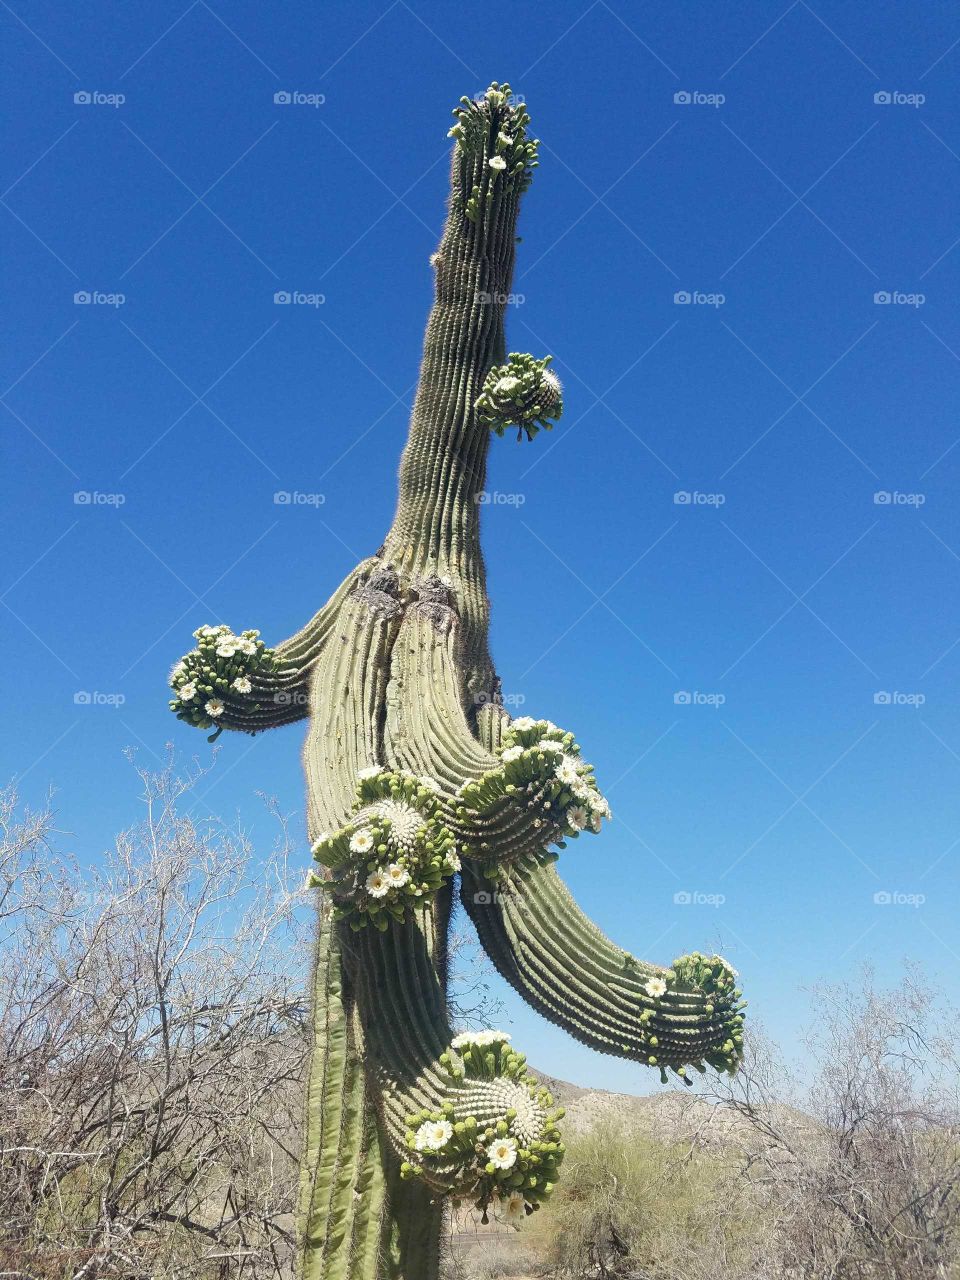 Arizona cactus in full bloom